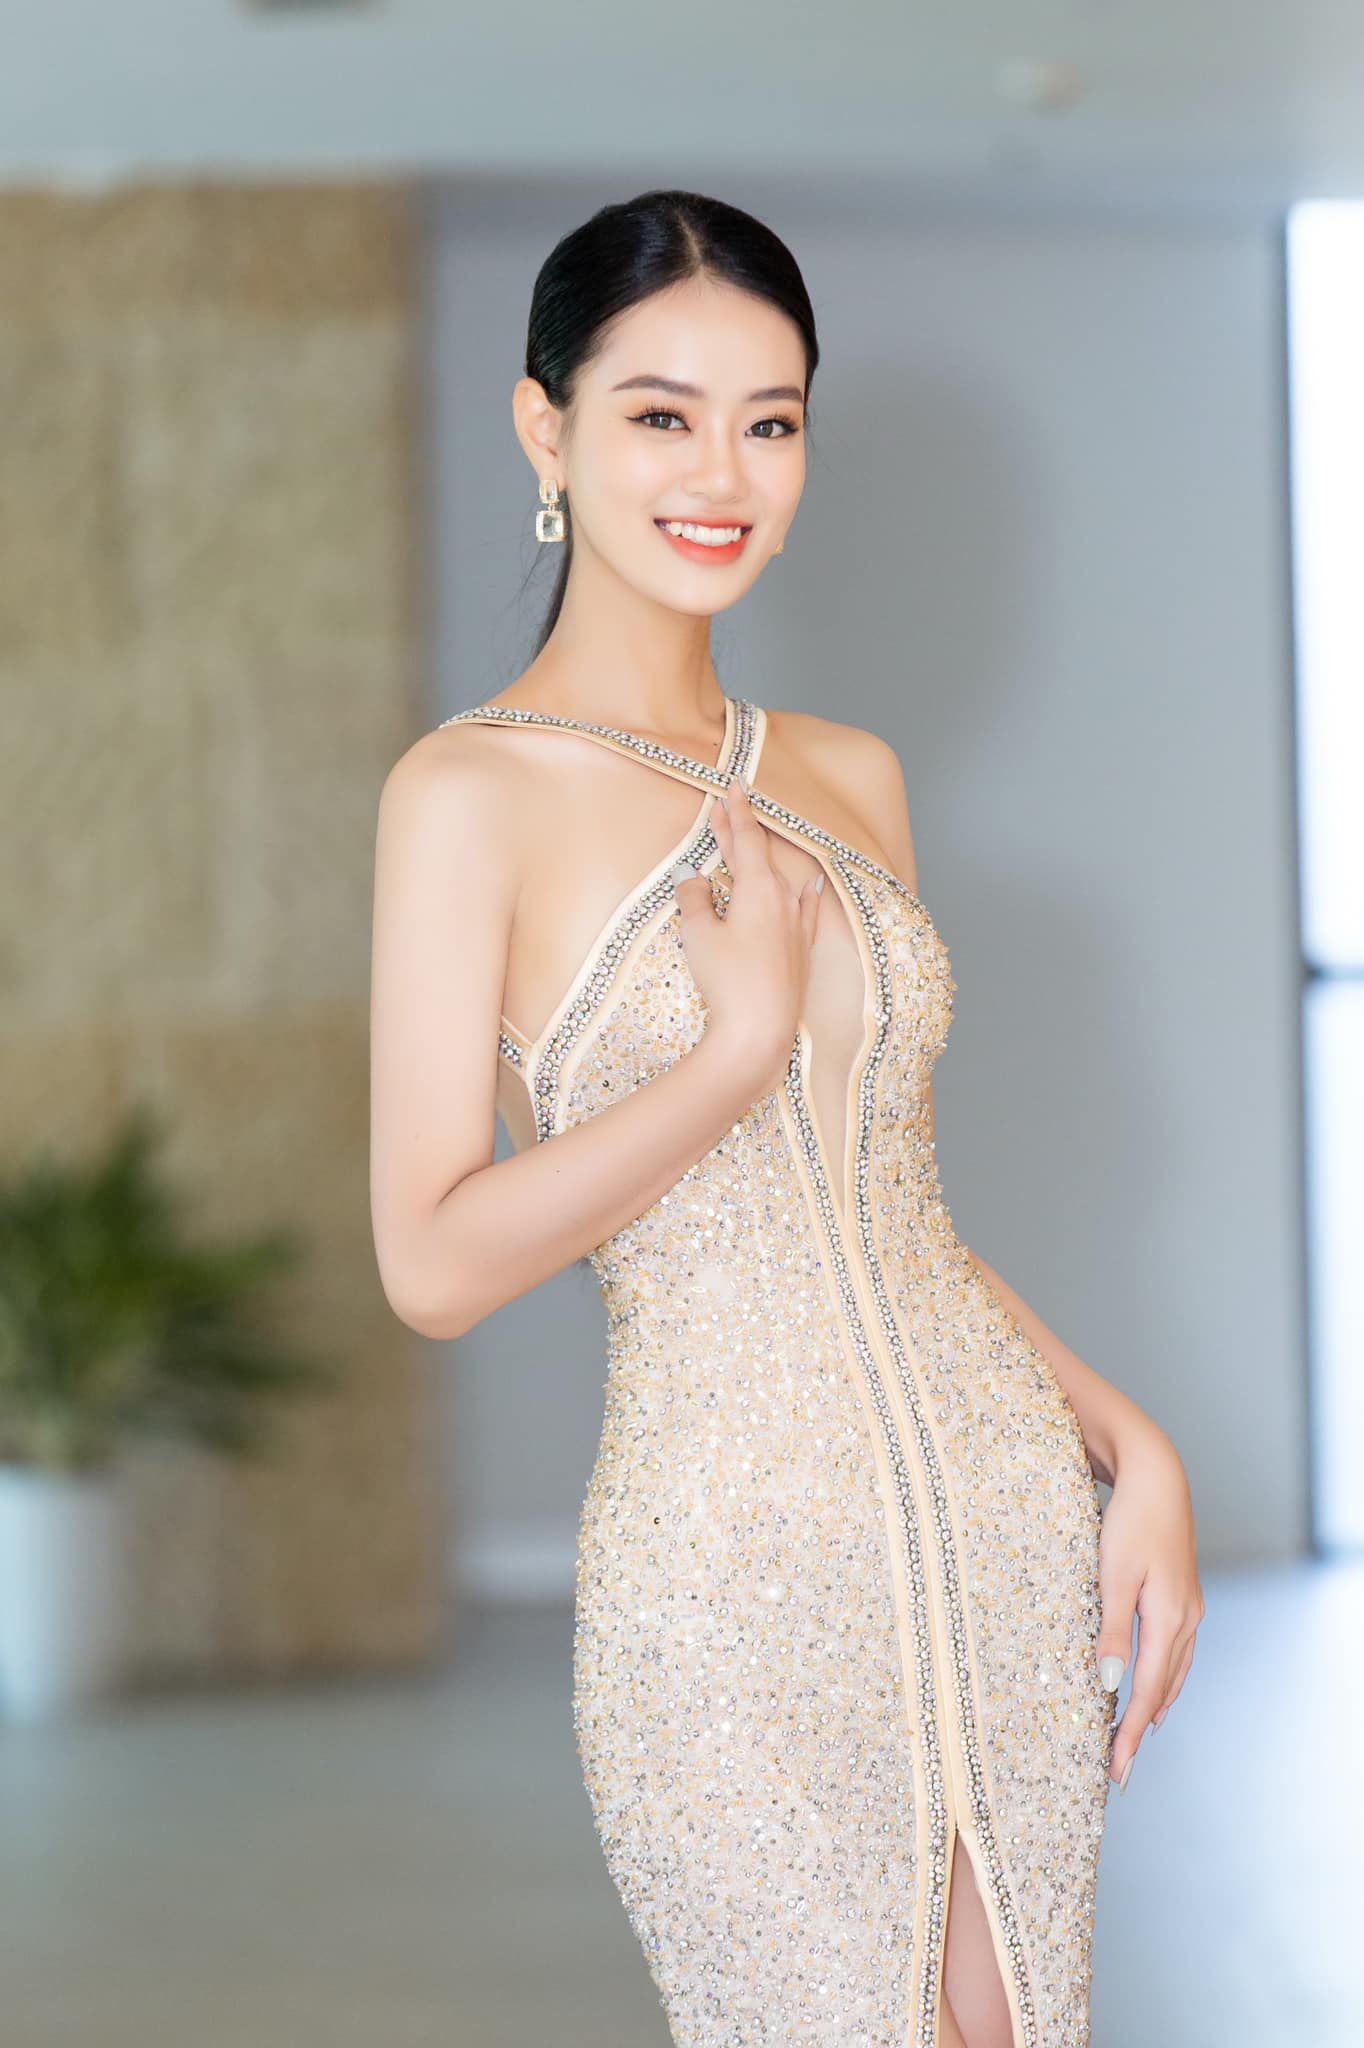 Nhan sắc xinh đẹp, quyến rũ của nữ thủ môn cao 1,76 m vào chung khảo Miss World Vietnam 2023 - Ảnh 10.